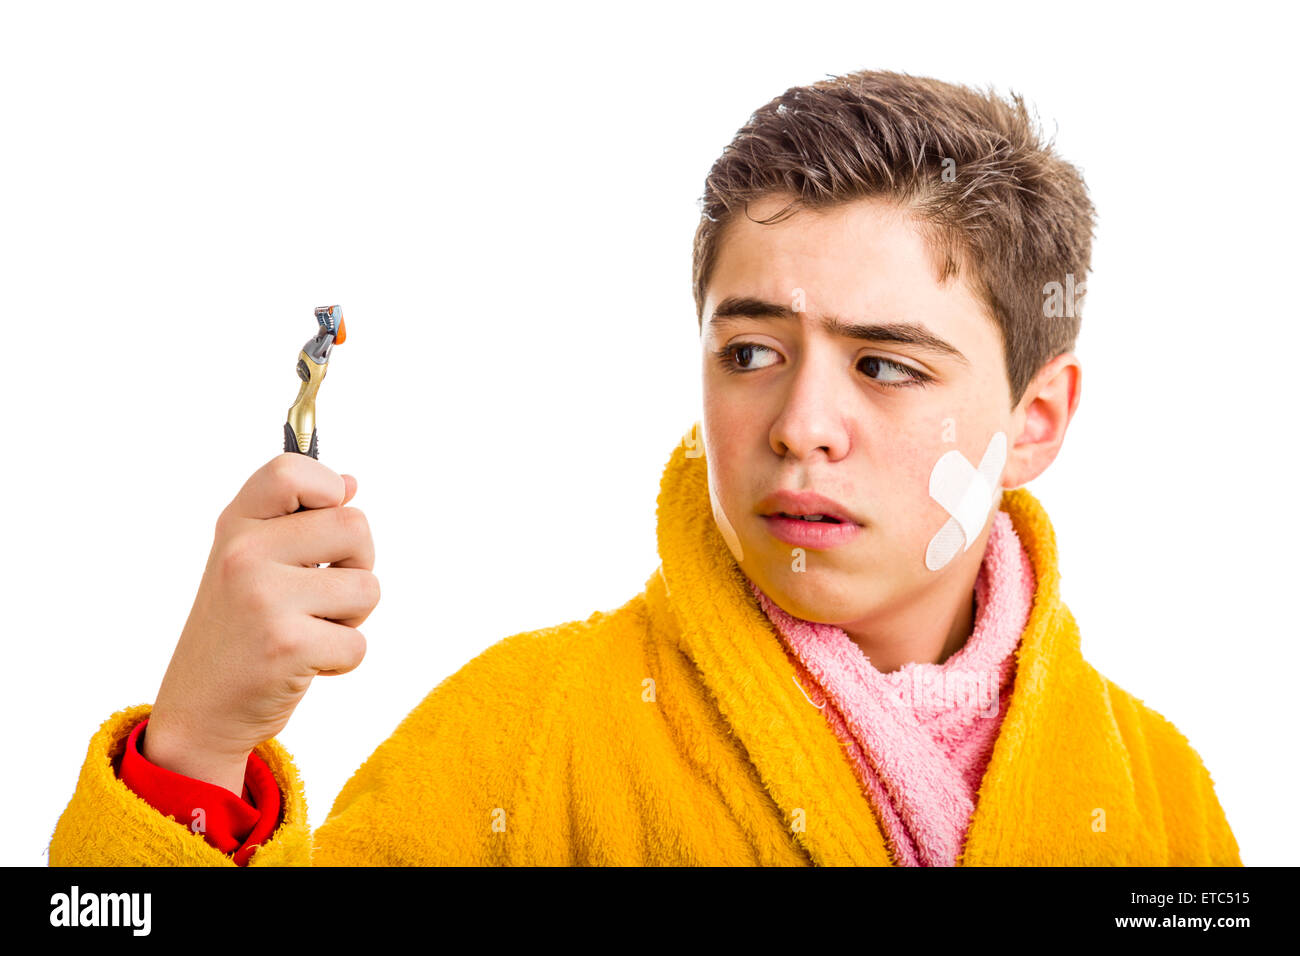 Ein spanischer Junge trägt einen gelben Bademantel mit einem rosa Handtuch um den Hals: er hat einige Flecken im Gesicht und starrt auf das Rasiermesser er für die Rasur verwendet Stockfoto